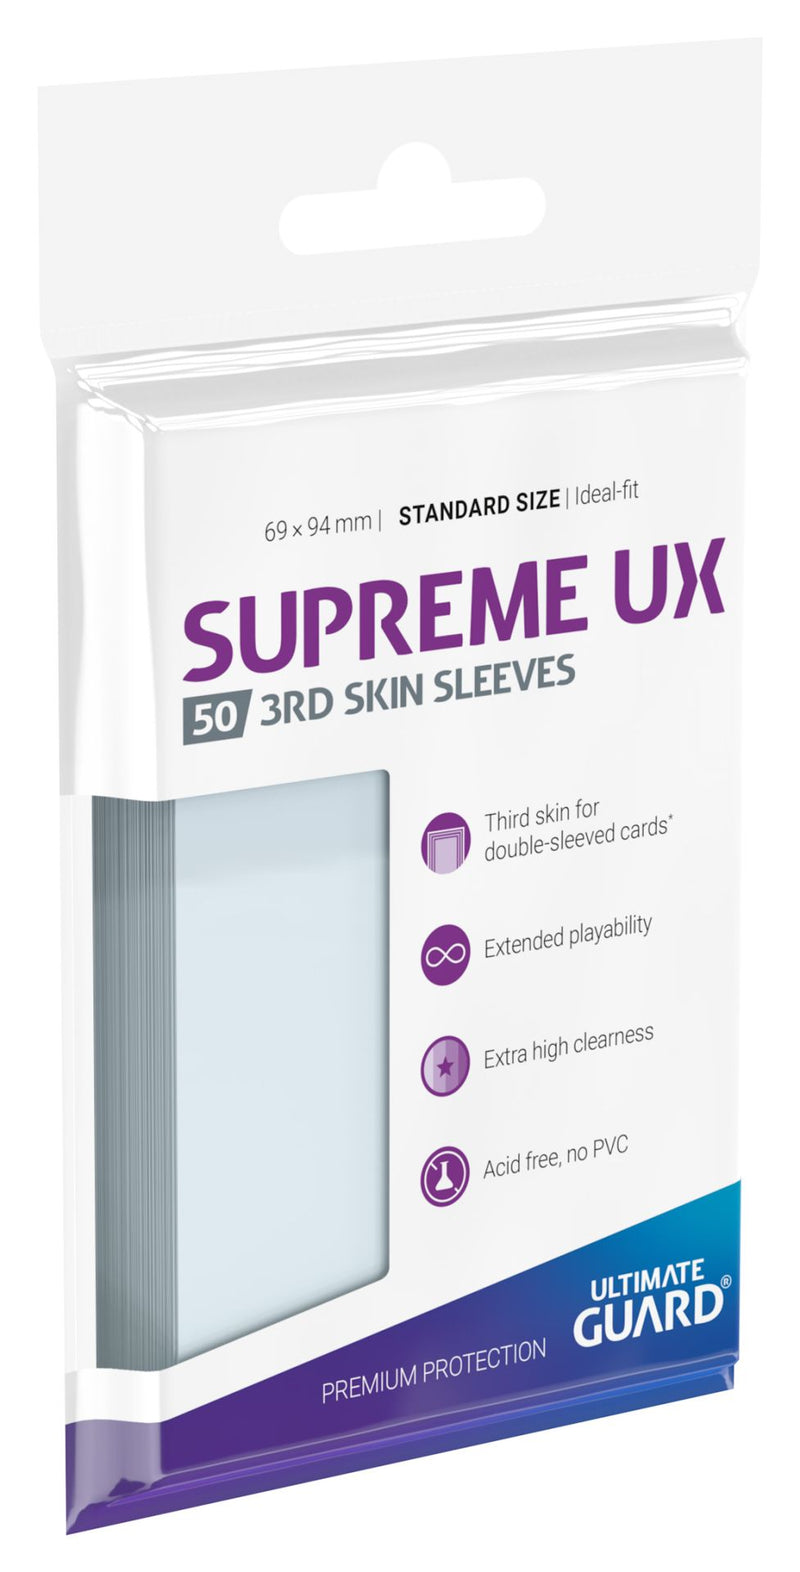 Ultimate Guard Supreme UX Sleeves 3rd Skin Sleeves